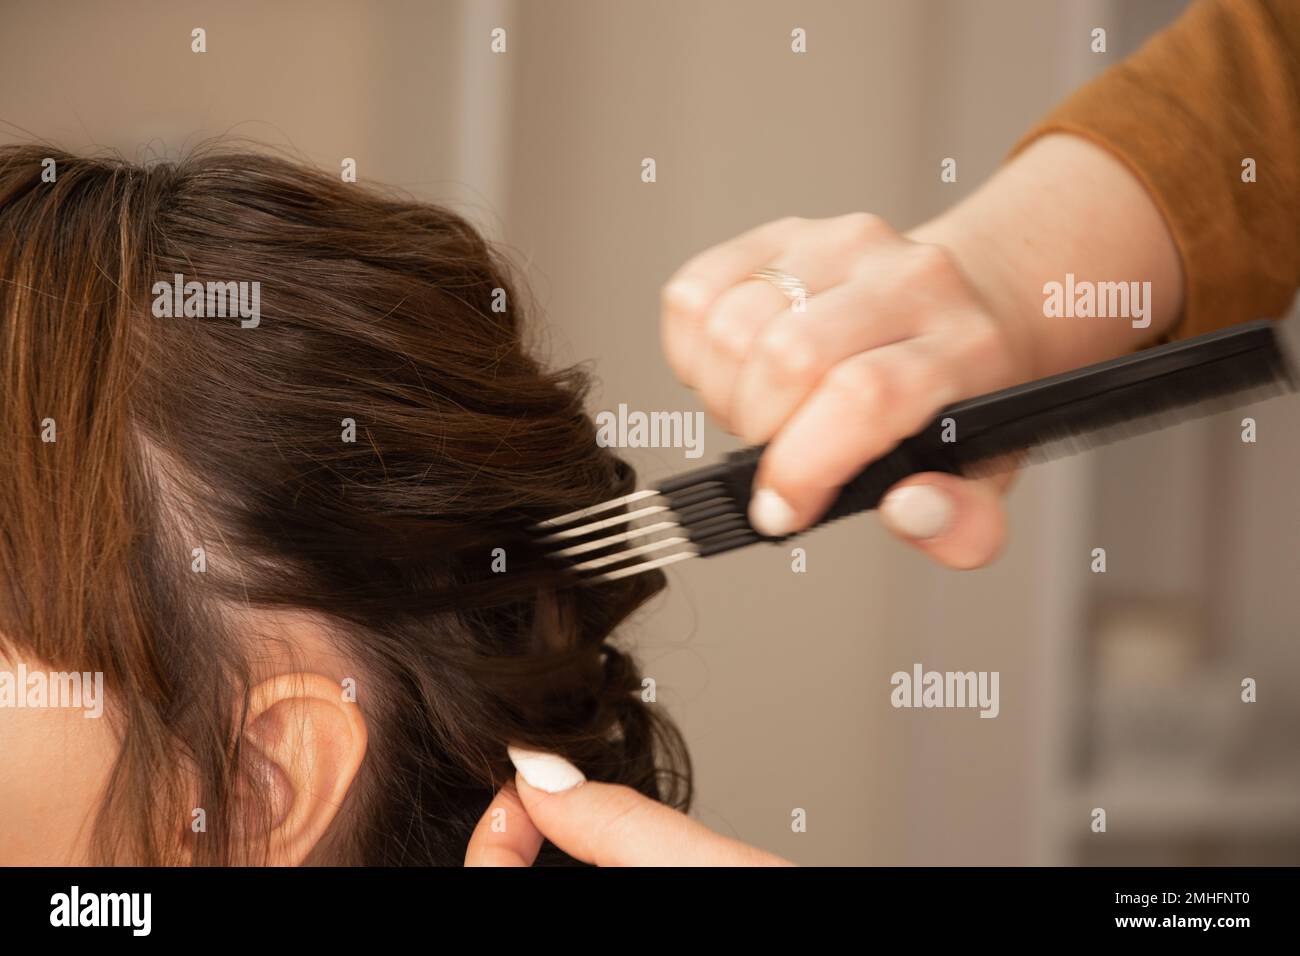 Femme avec une coiffure créative des braïdes, une photo en gros plan, des braïdes tressés, une coiffure créative Banque D'Images